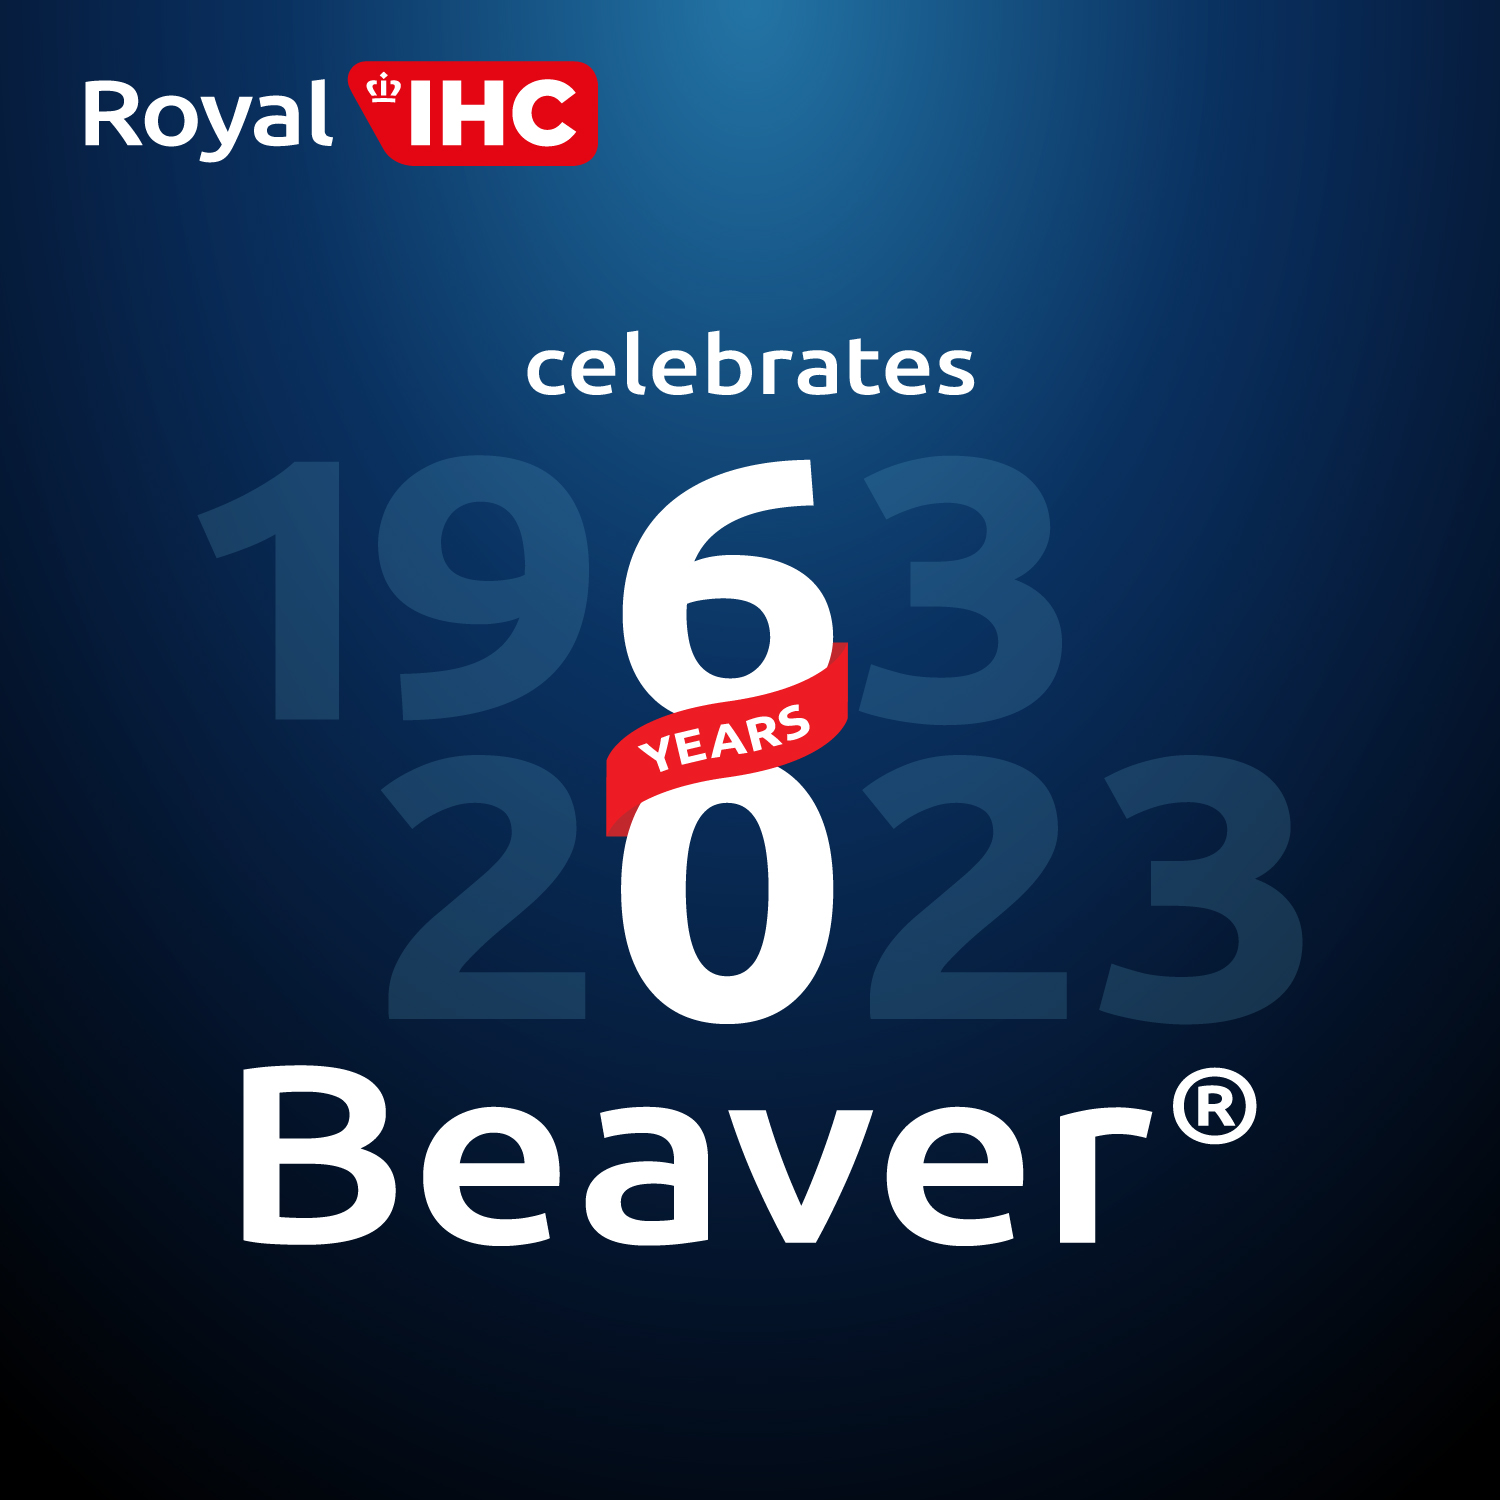 Beaver 60 years